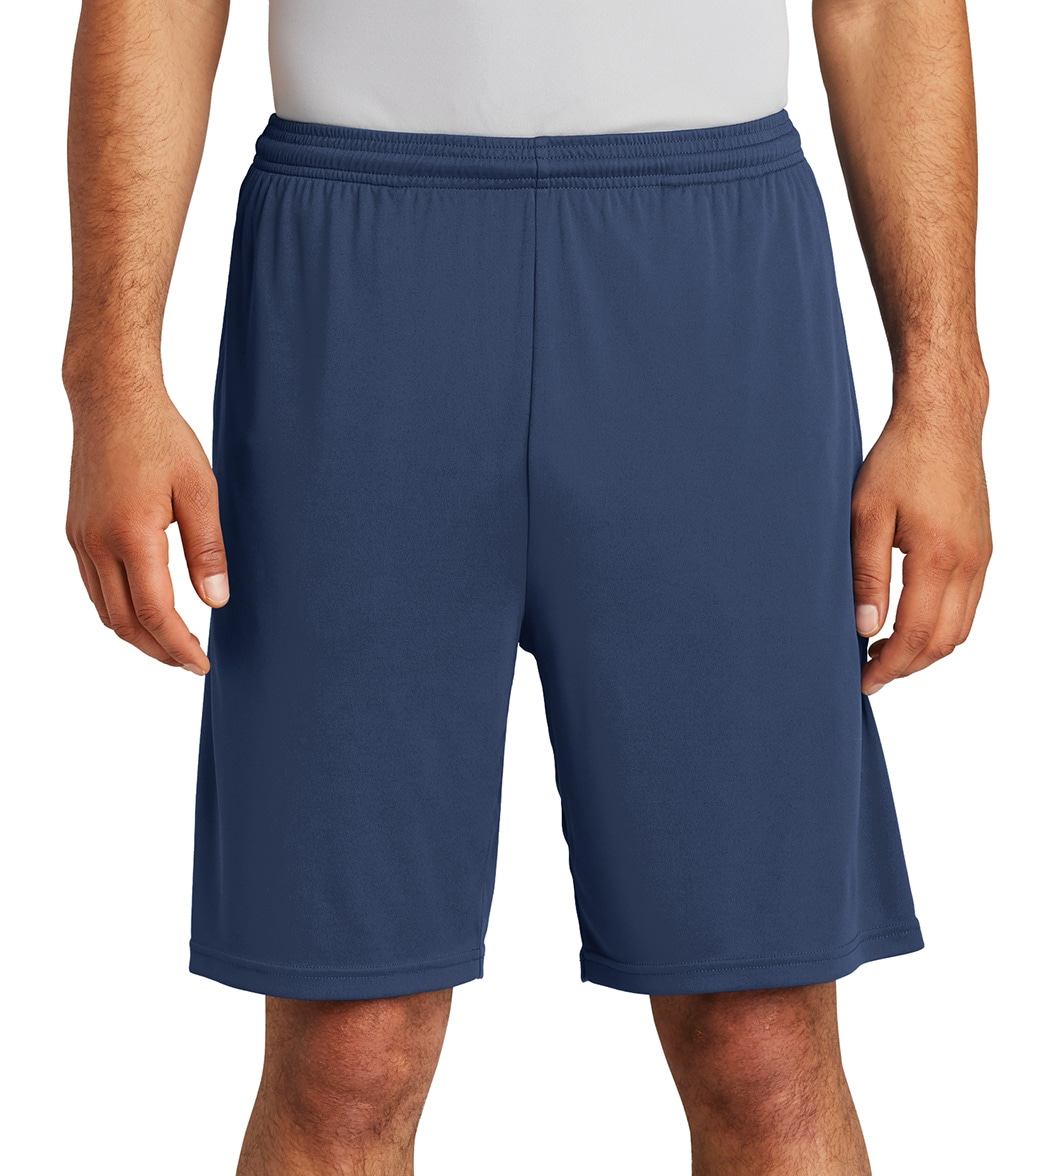 Men's Sport-Tek Posicharge Competitortm Pocketed Short - True Navy Large Polyester - Swimoutlet.com